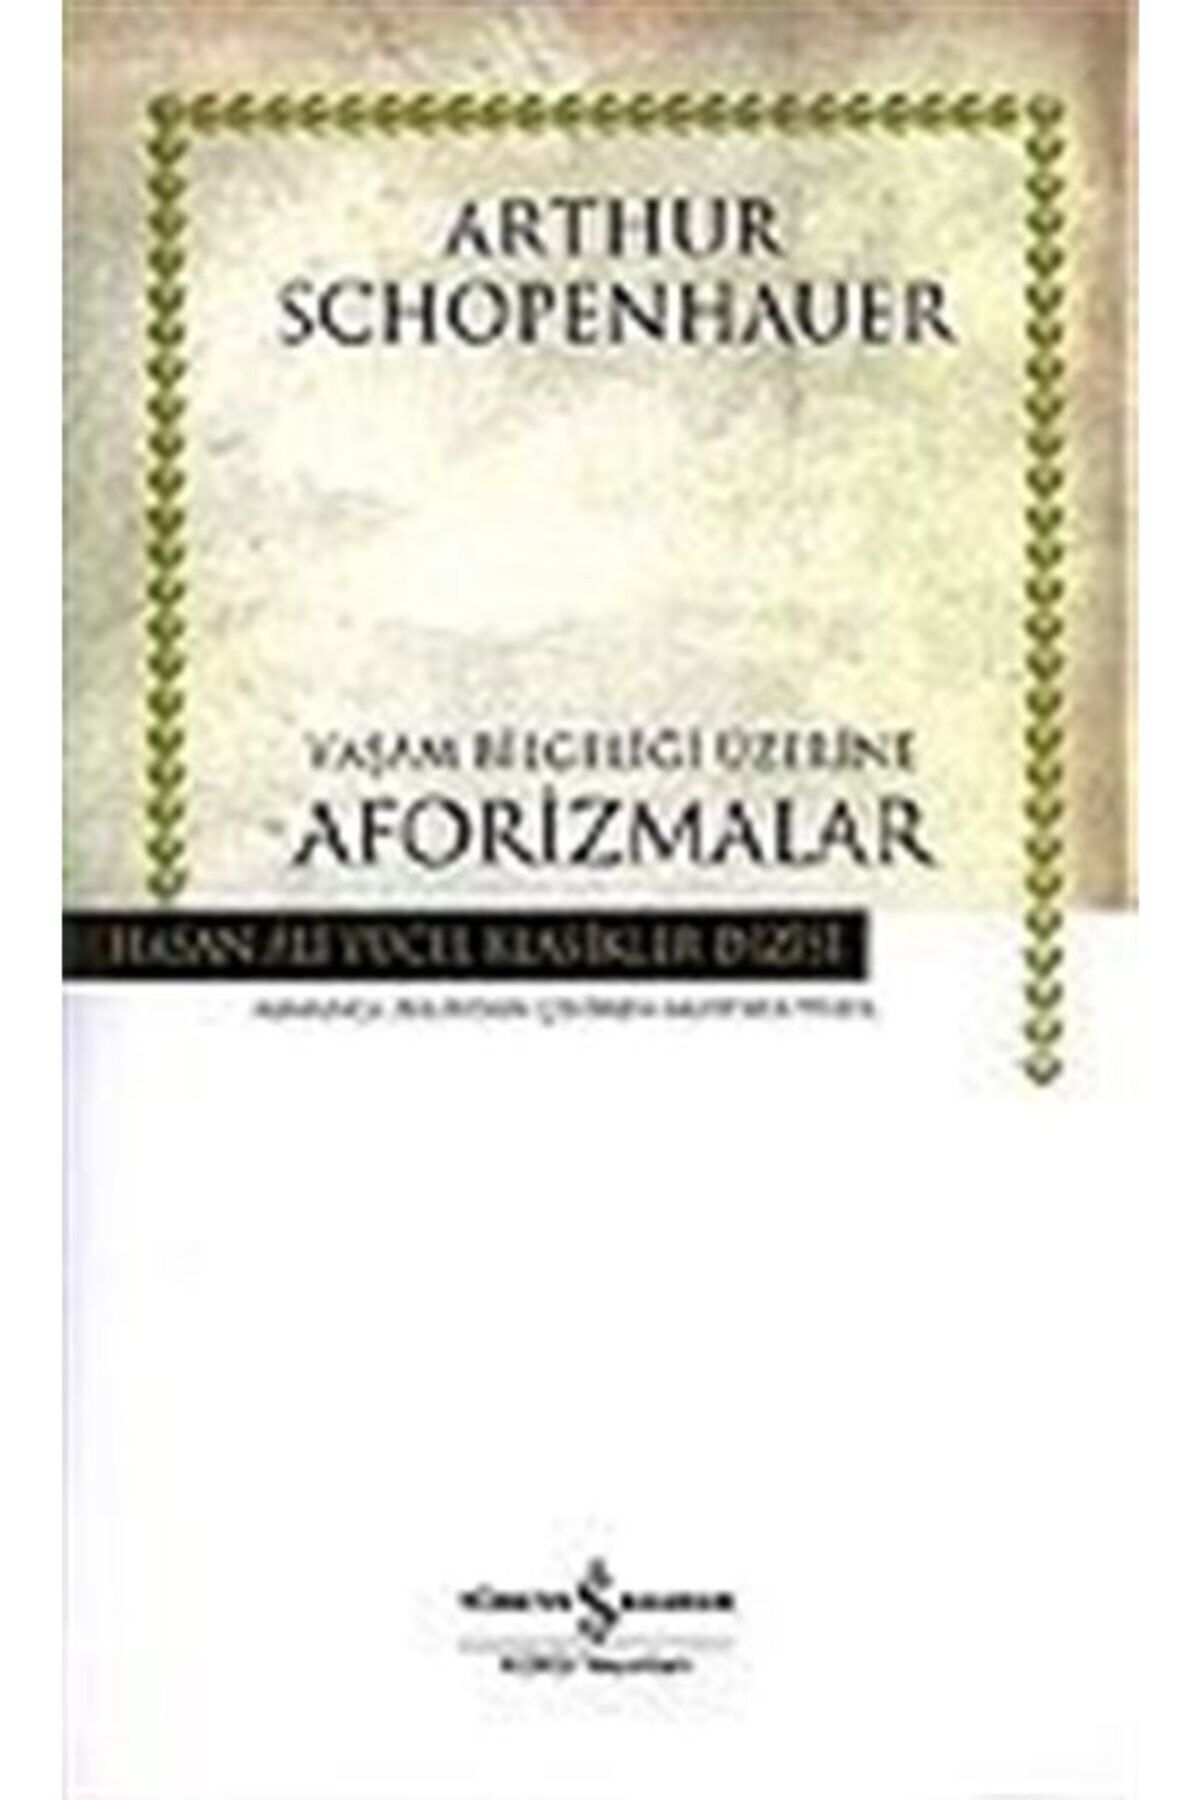 Türkiye İş Bankası Kültür Yayınları Yaşam Bilgeliği Üzerine Aforizmalar (CİLTLİ) - Arthur Schopenhauer